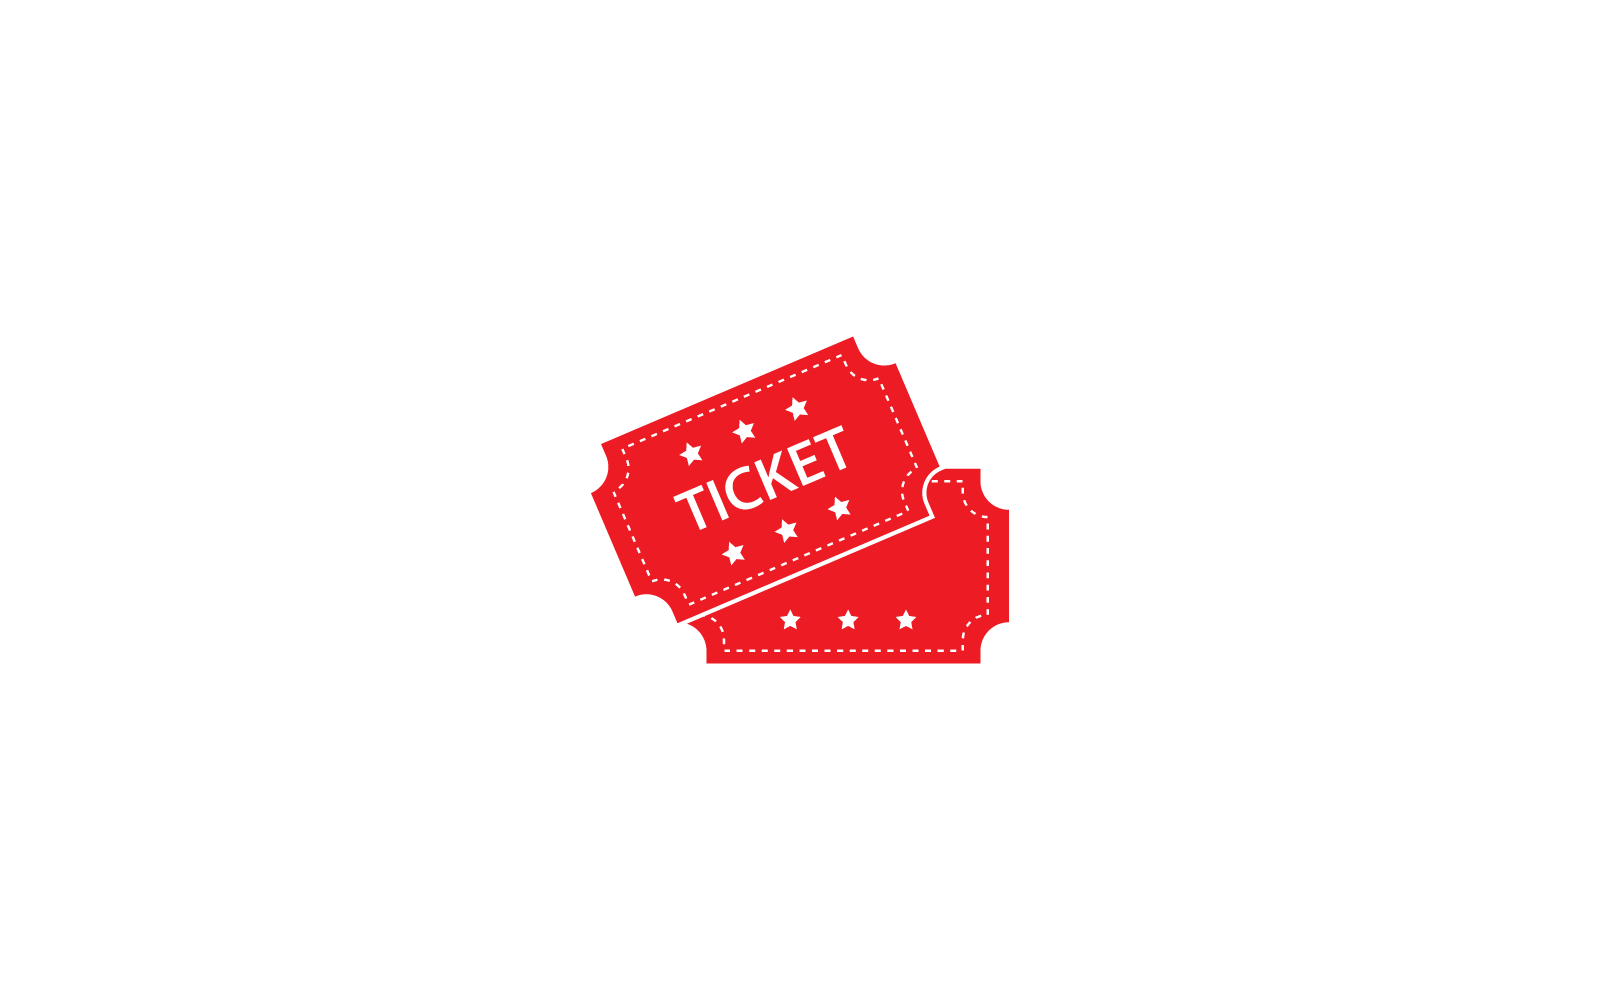 Ticket logo illustration vector flat design